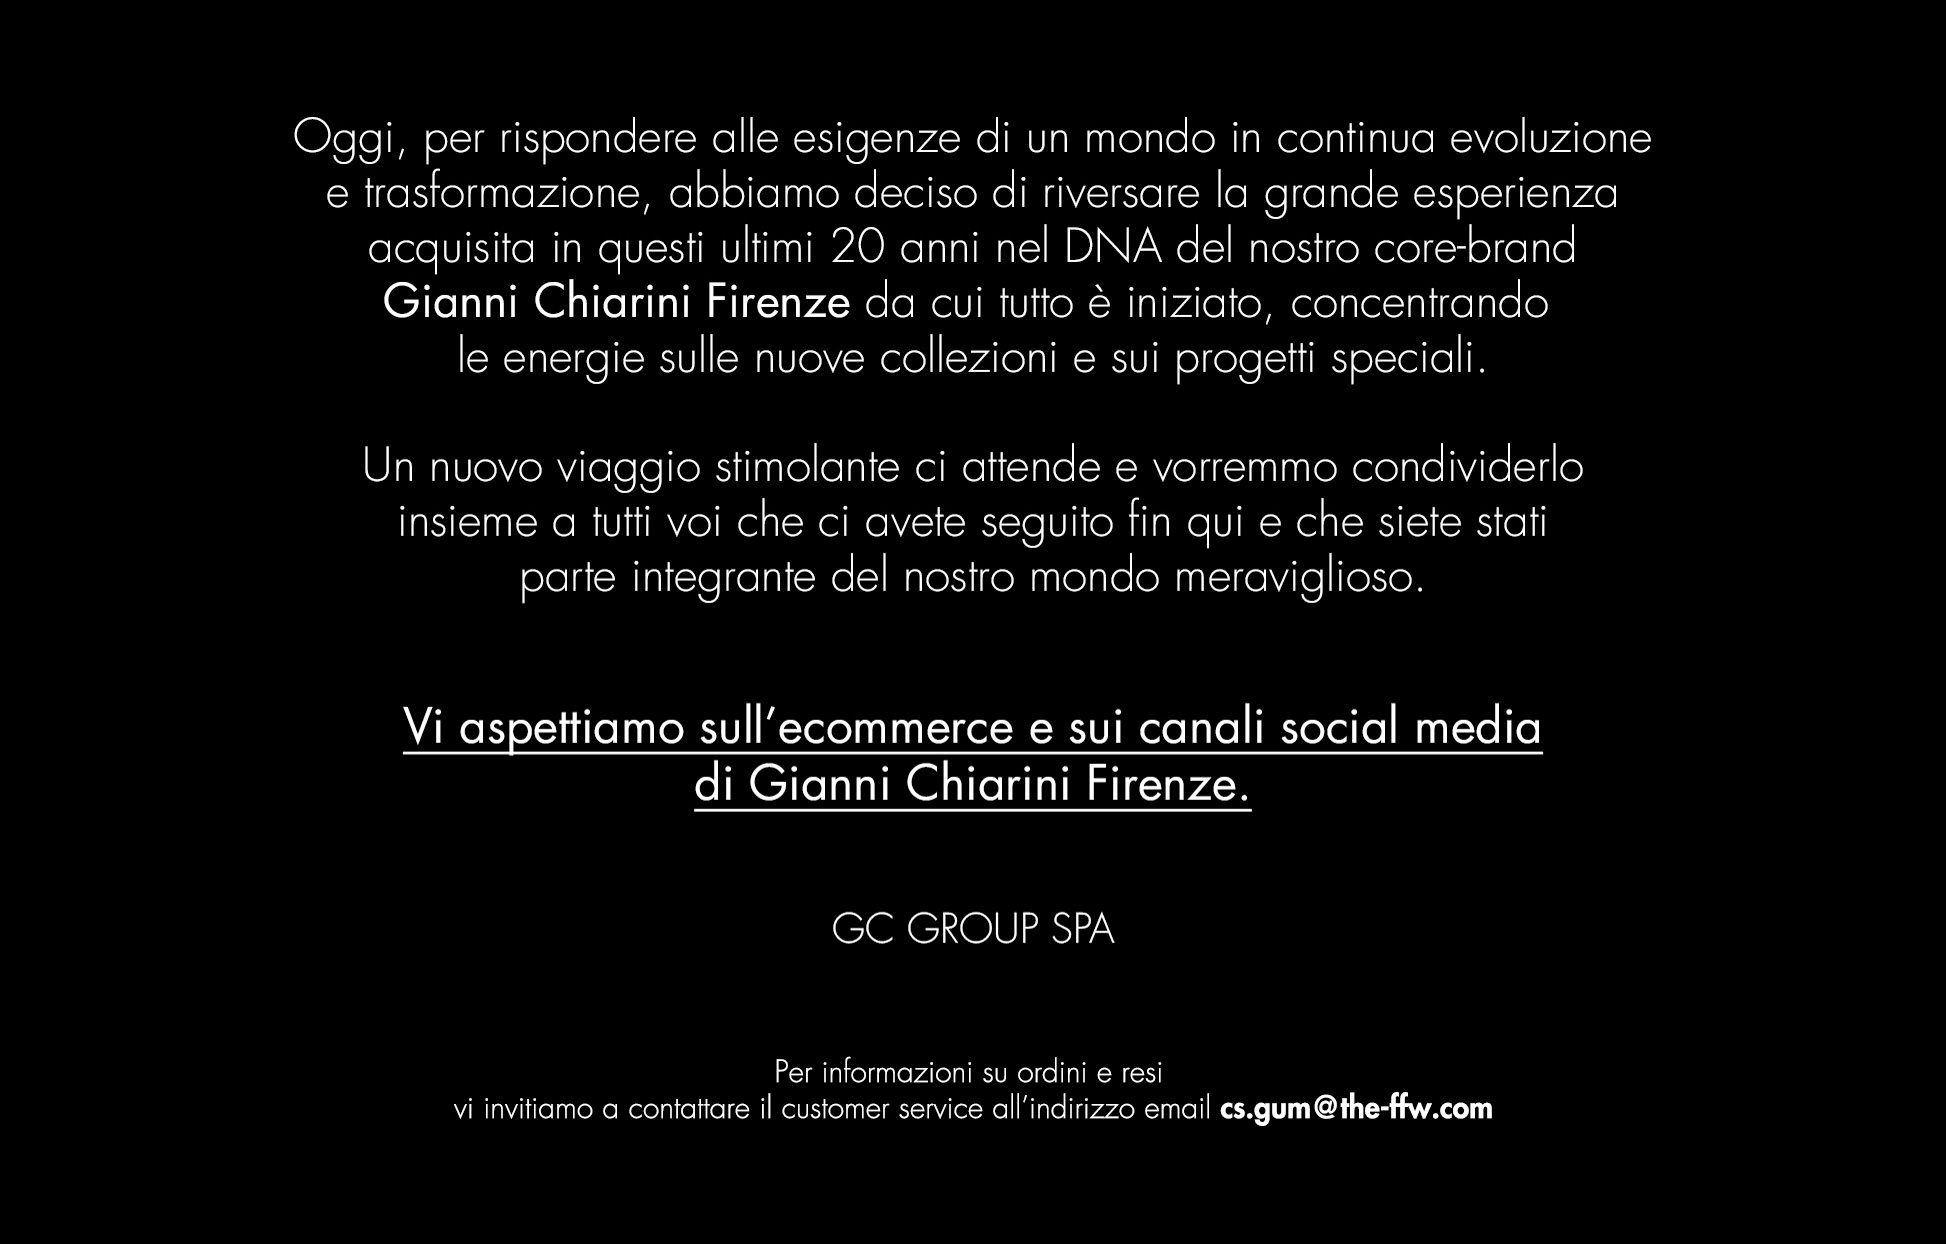 Vi aspettiamo sull'ecommerce e sui canali social media di Gianni Chiarini Firenze